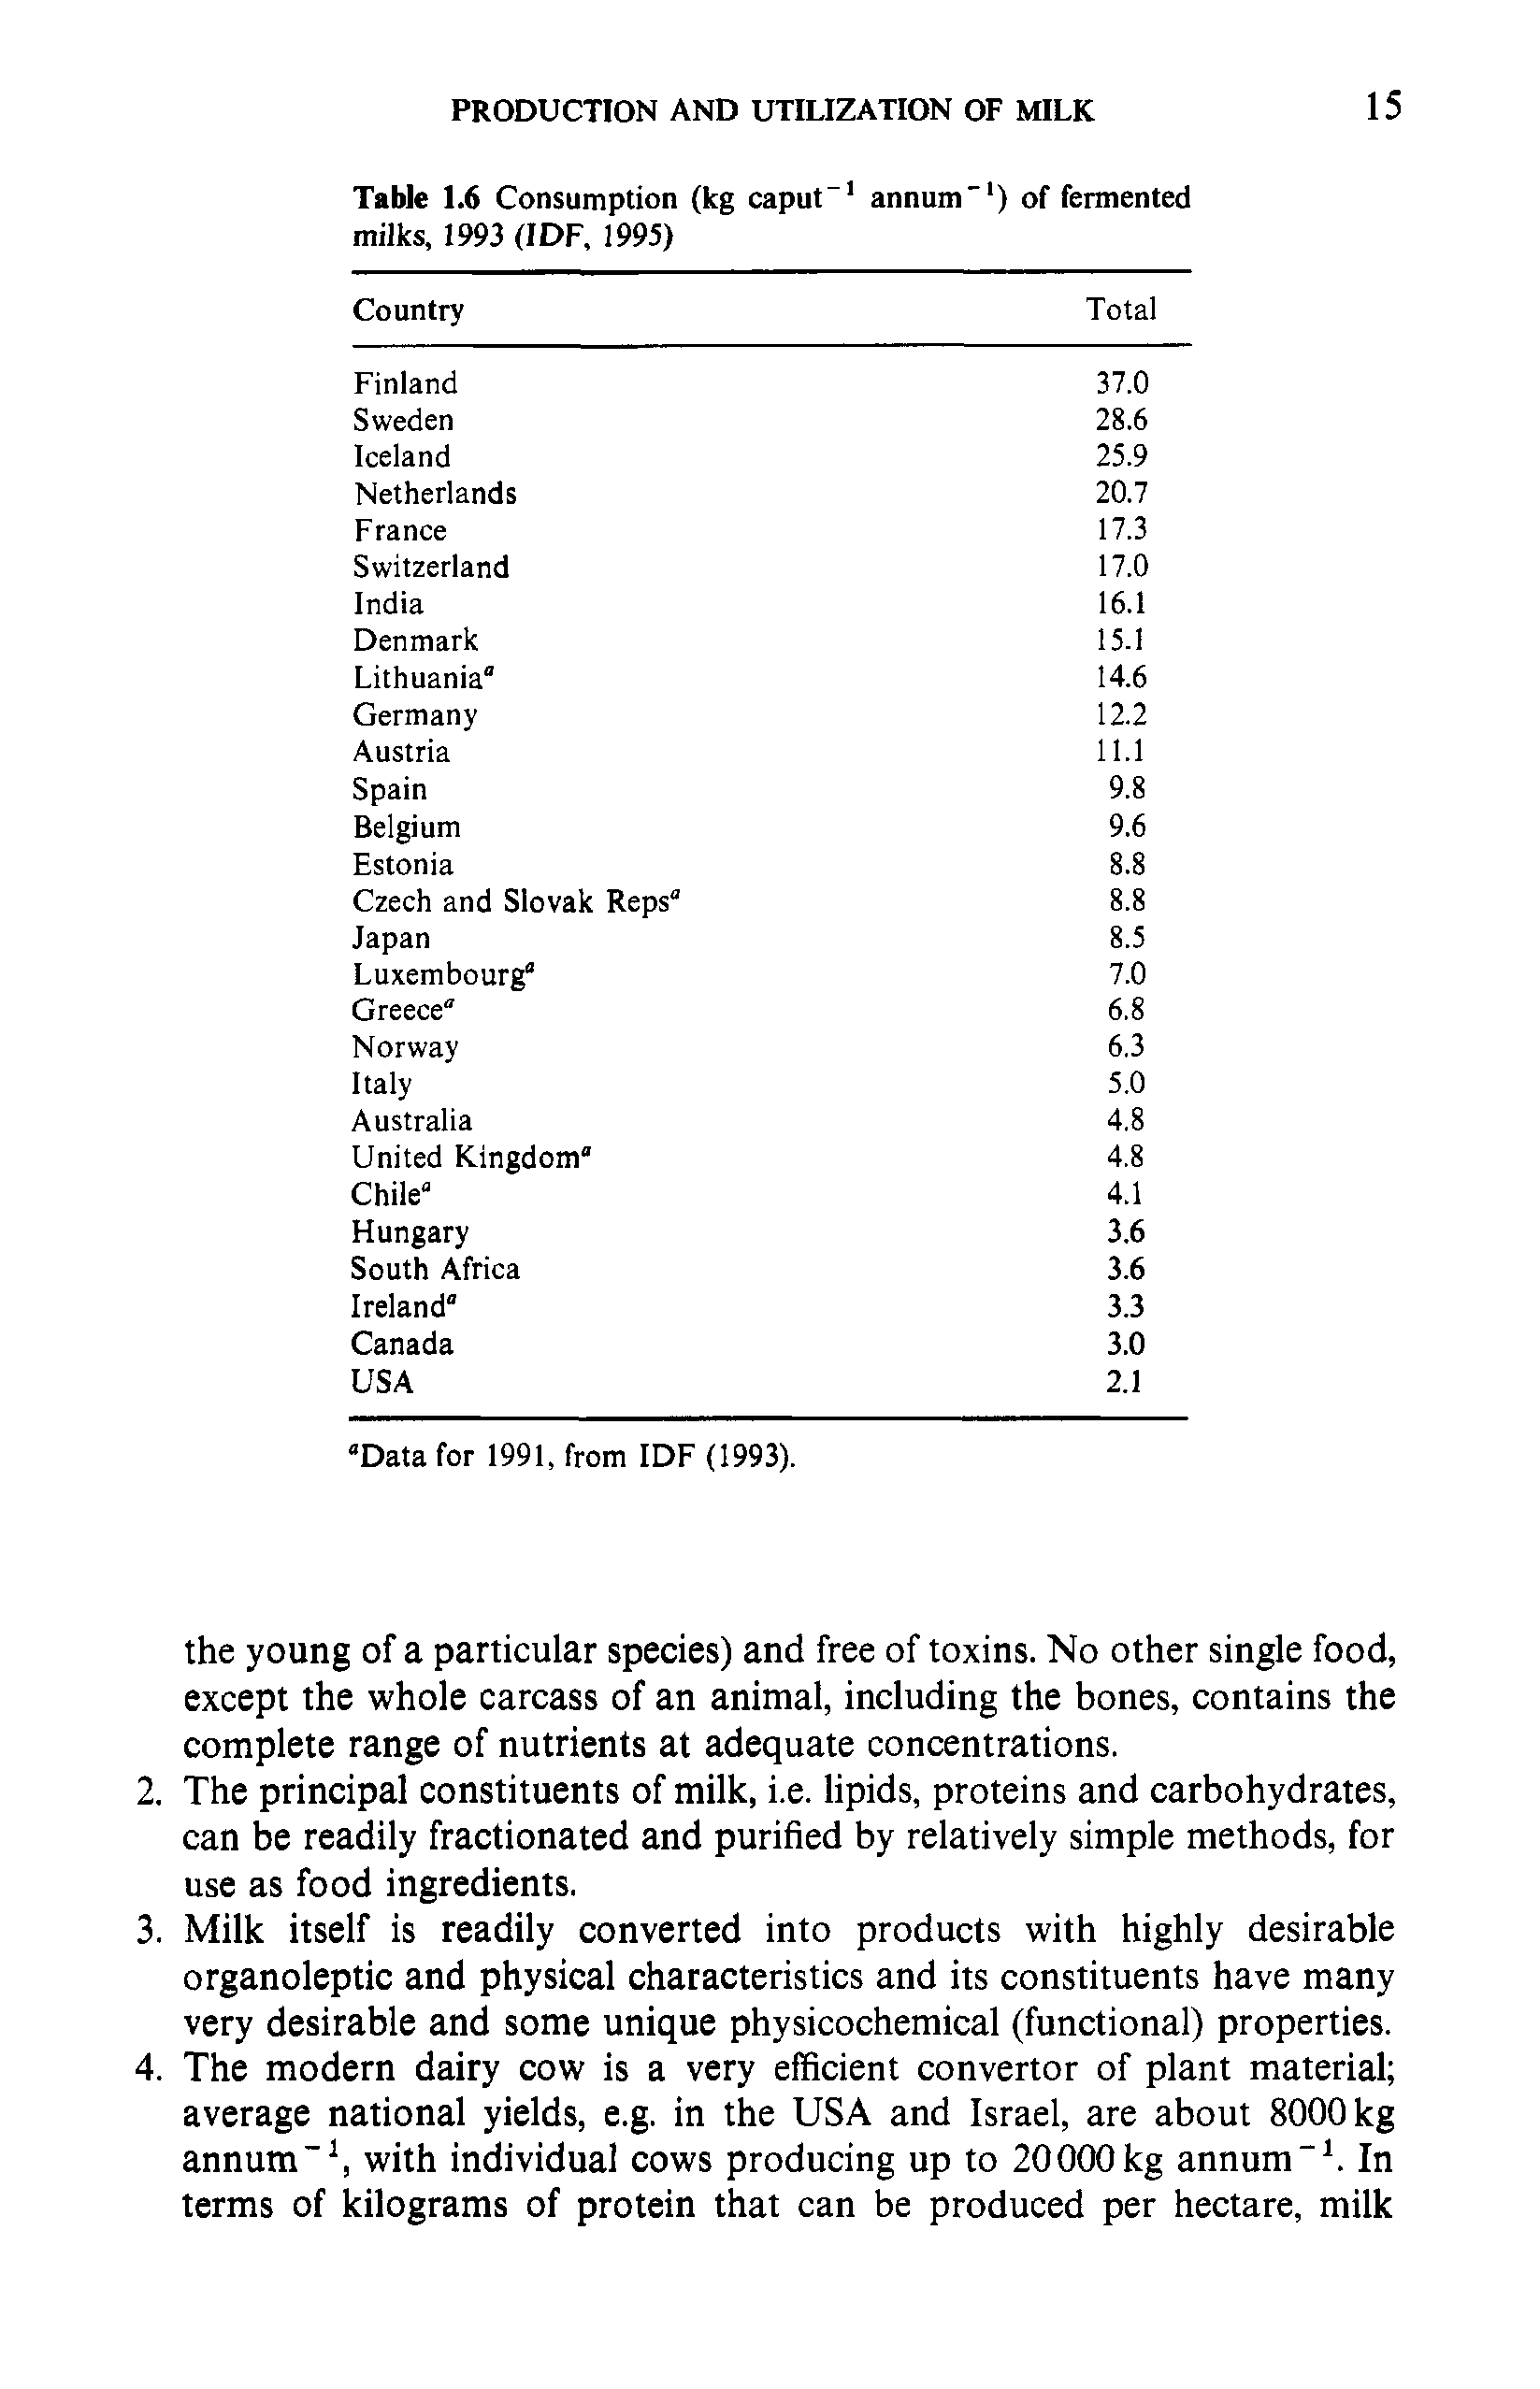 Table 1.6 Consumption (kg caput 1 annum"1) of fermented milks, 1993 (IDF, 1995)...